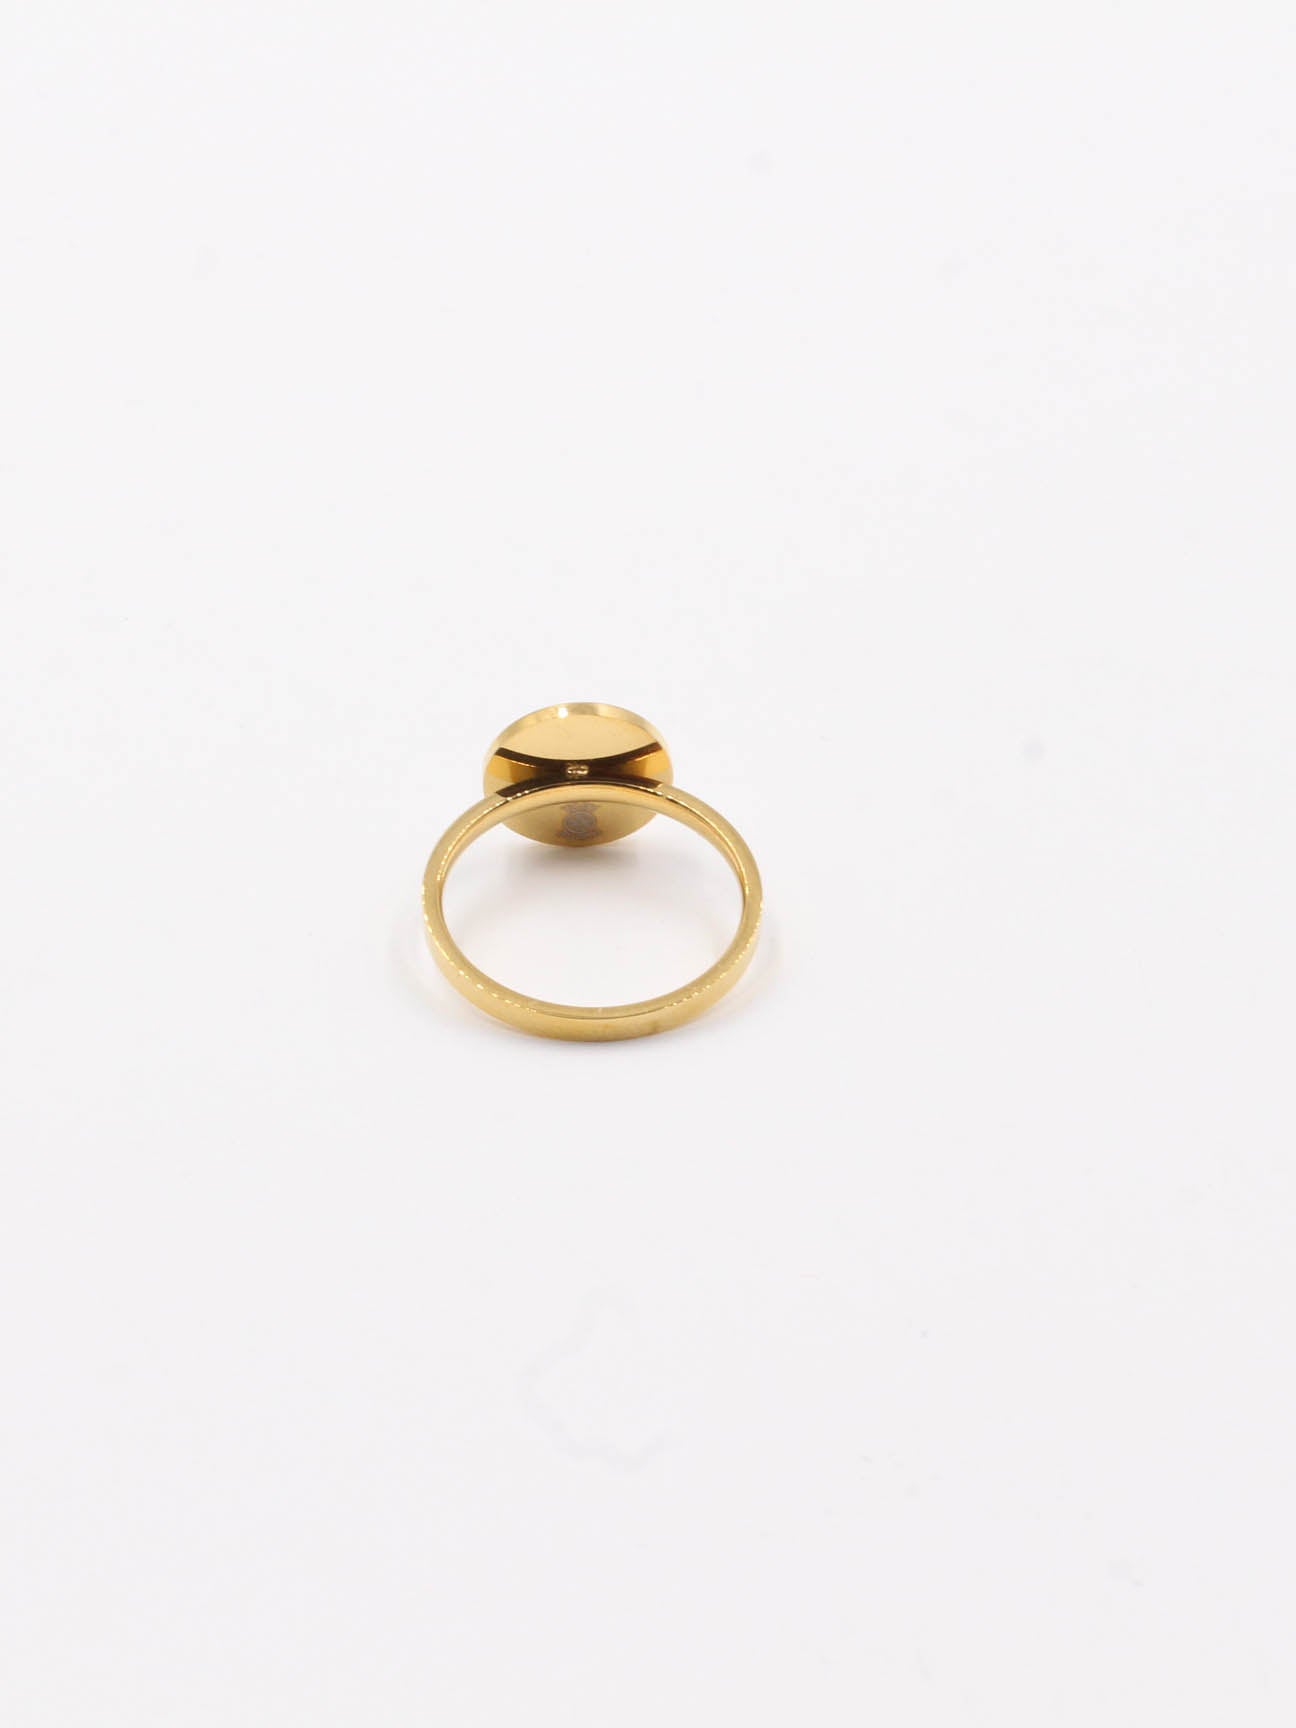 Tory Burch gold ring - خاتم توري بورش ذهبي خواتم Jewel  